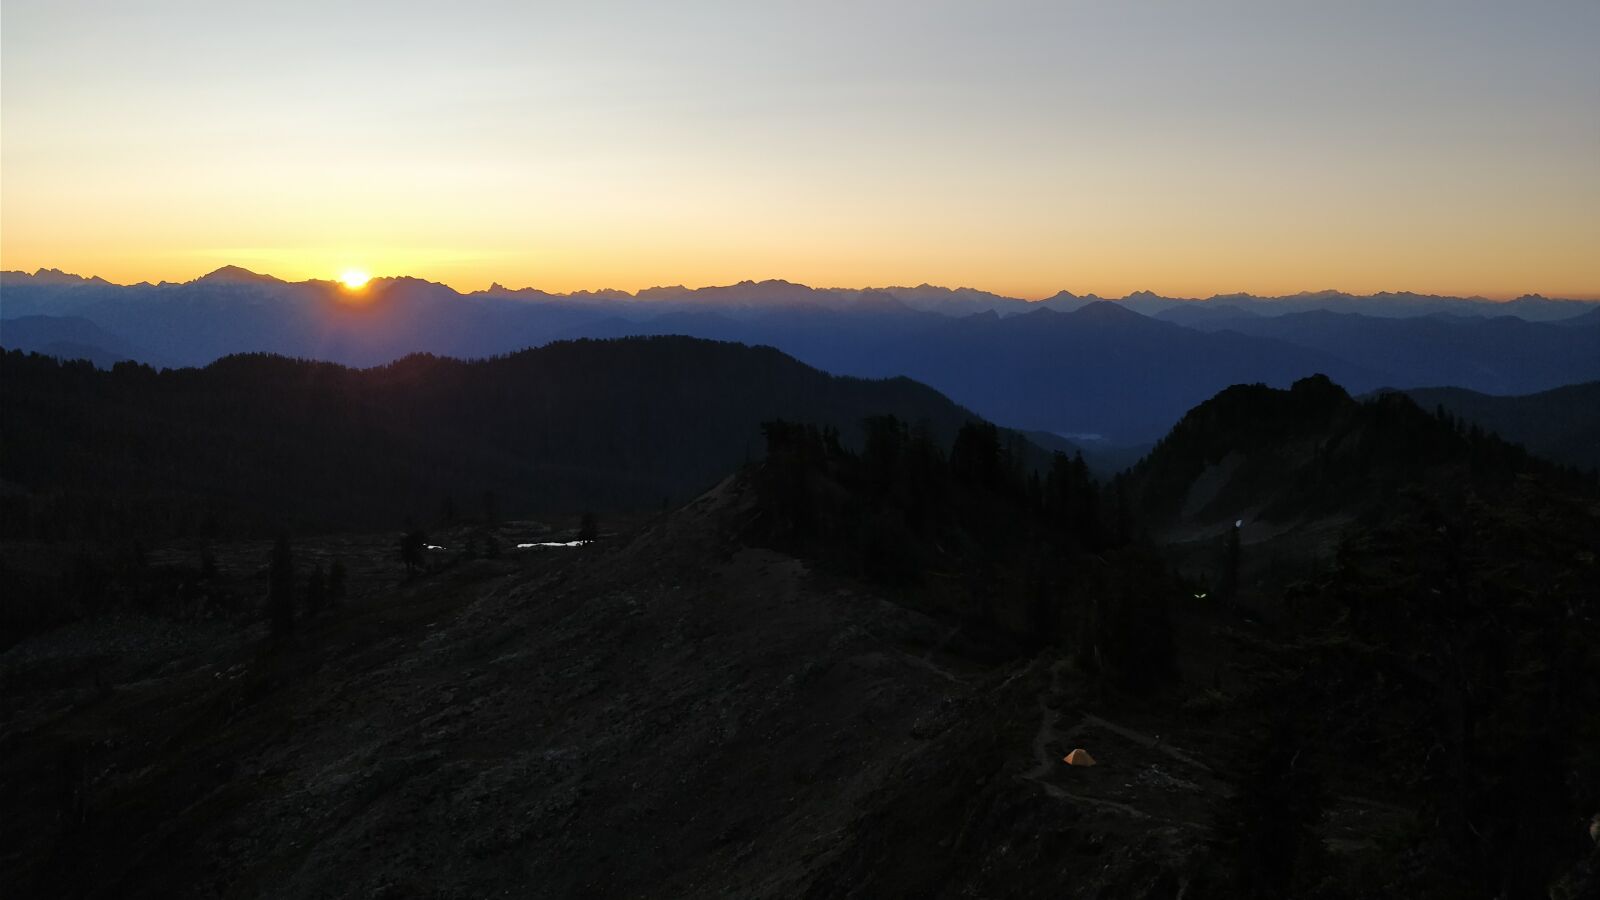 OnePlus 5 sample photo. Mountain, range, sunrise photography